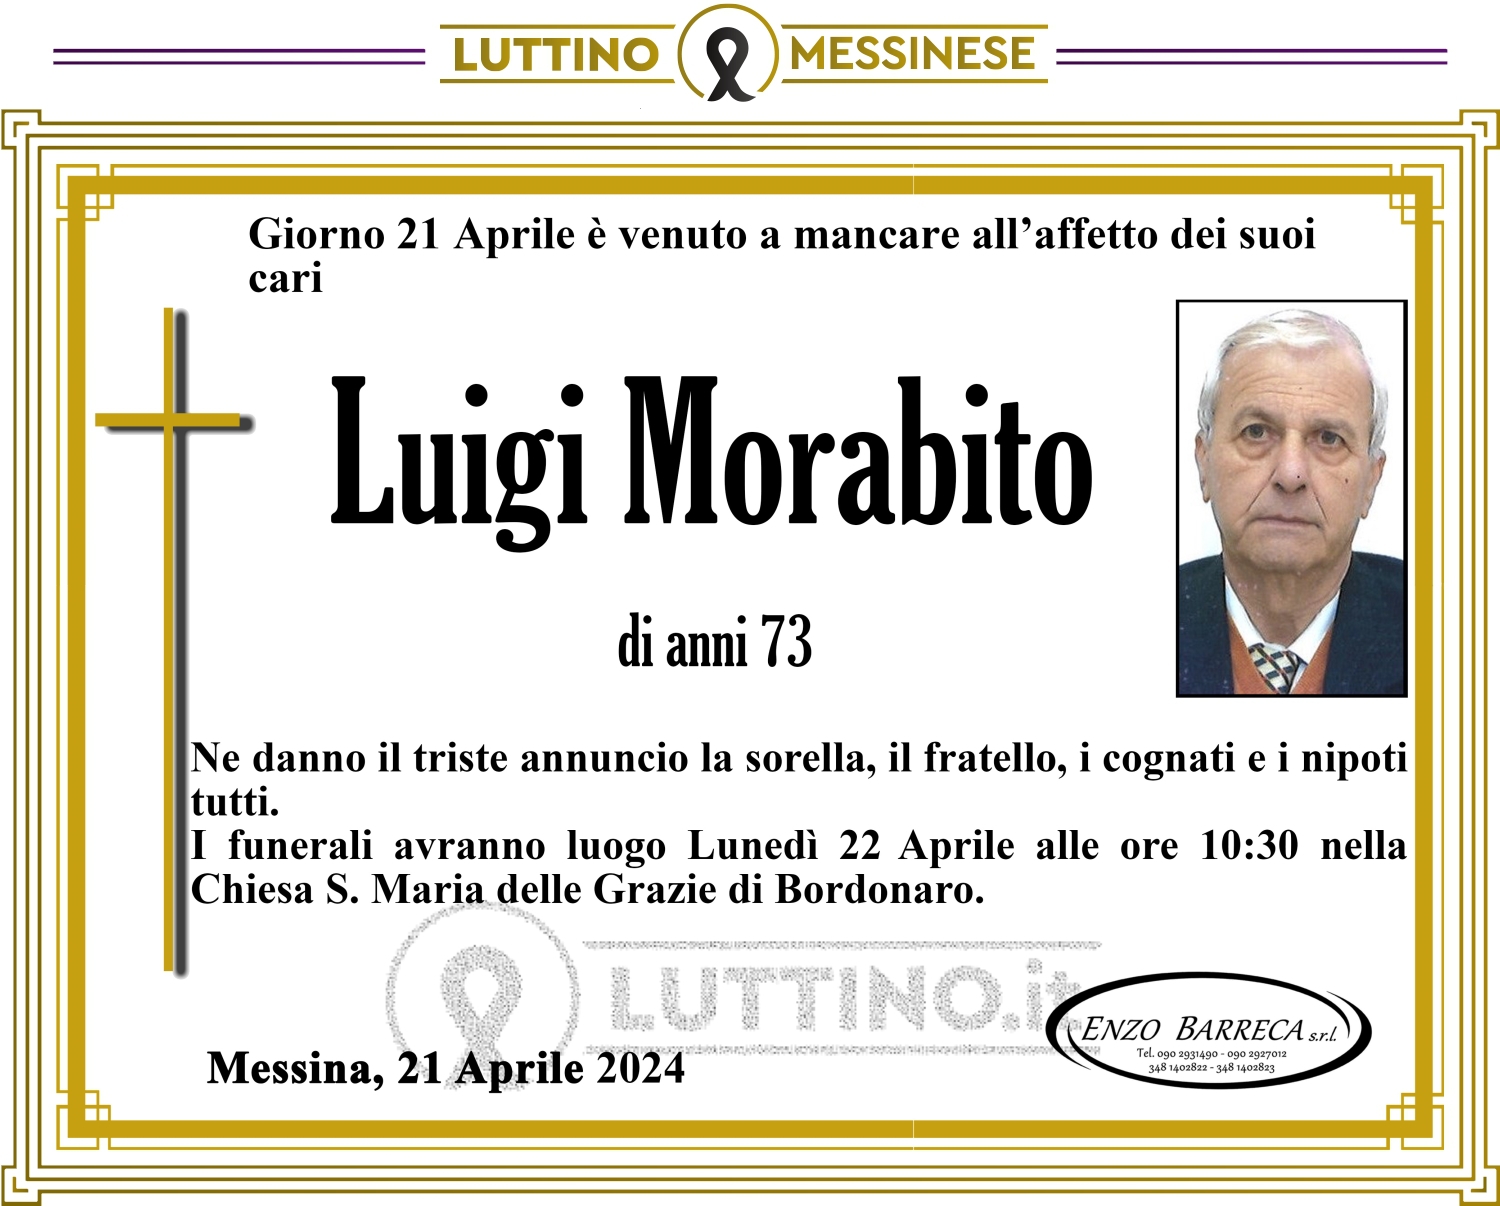 Luigi Morabito